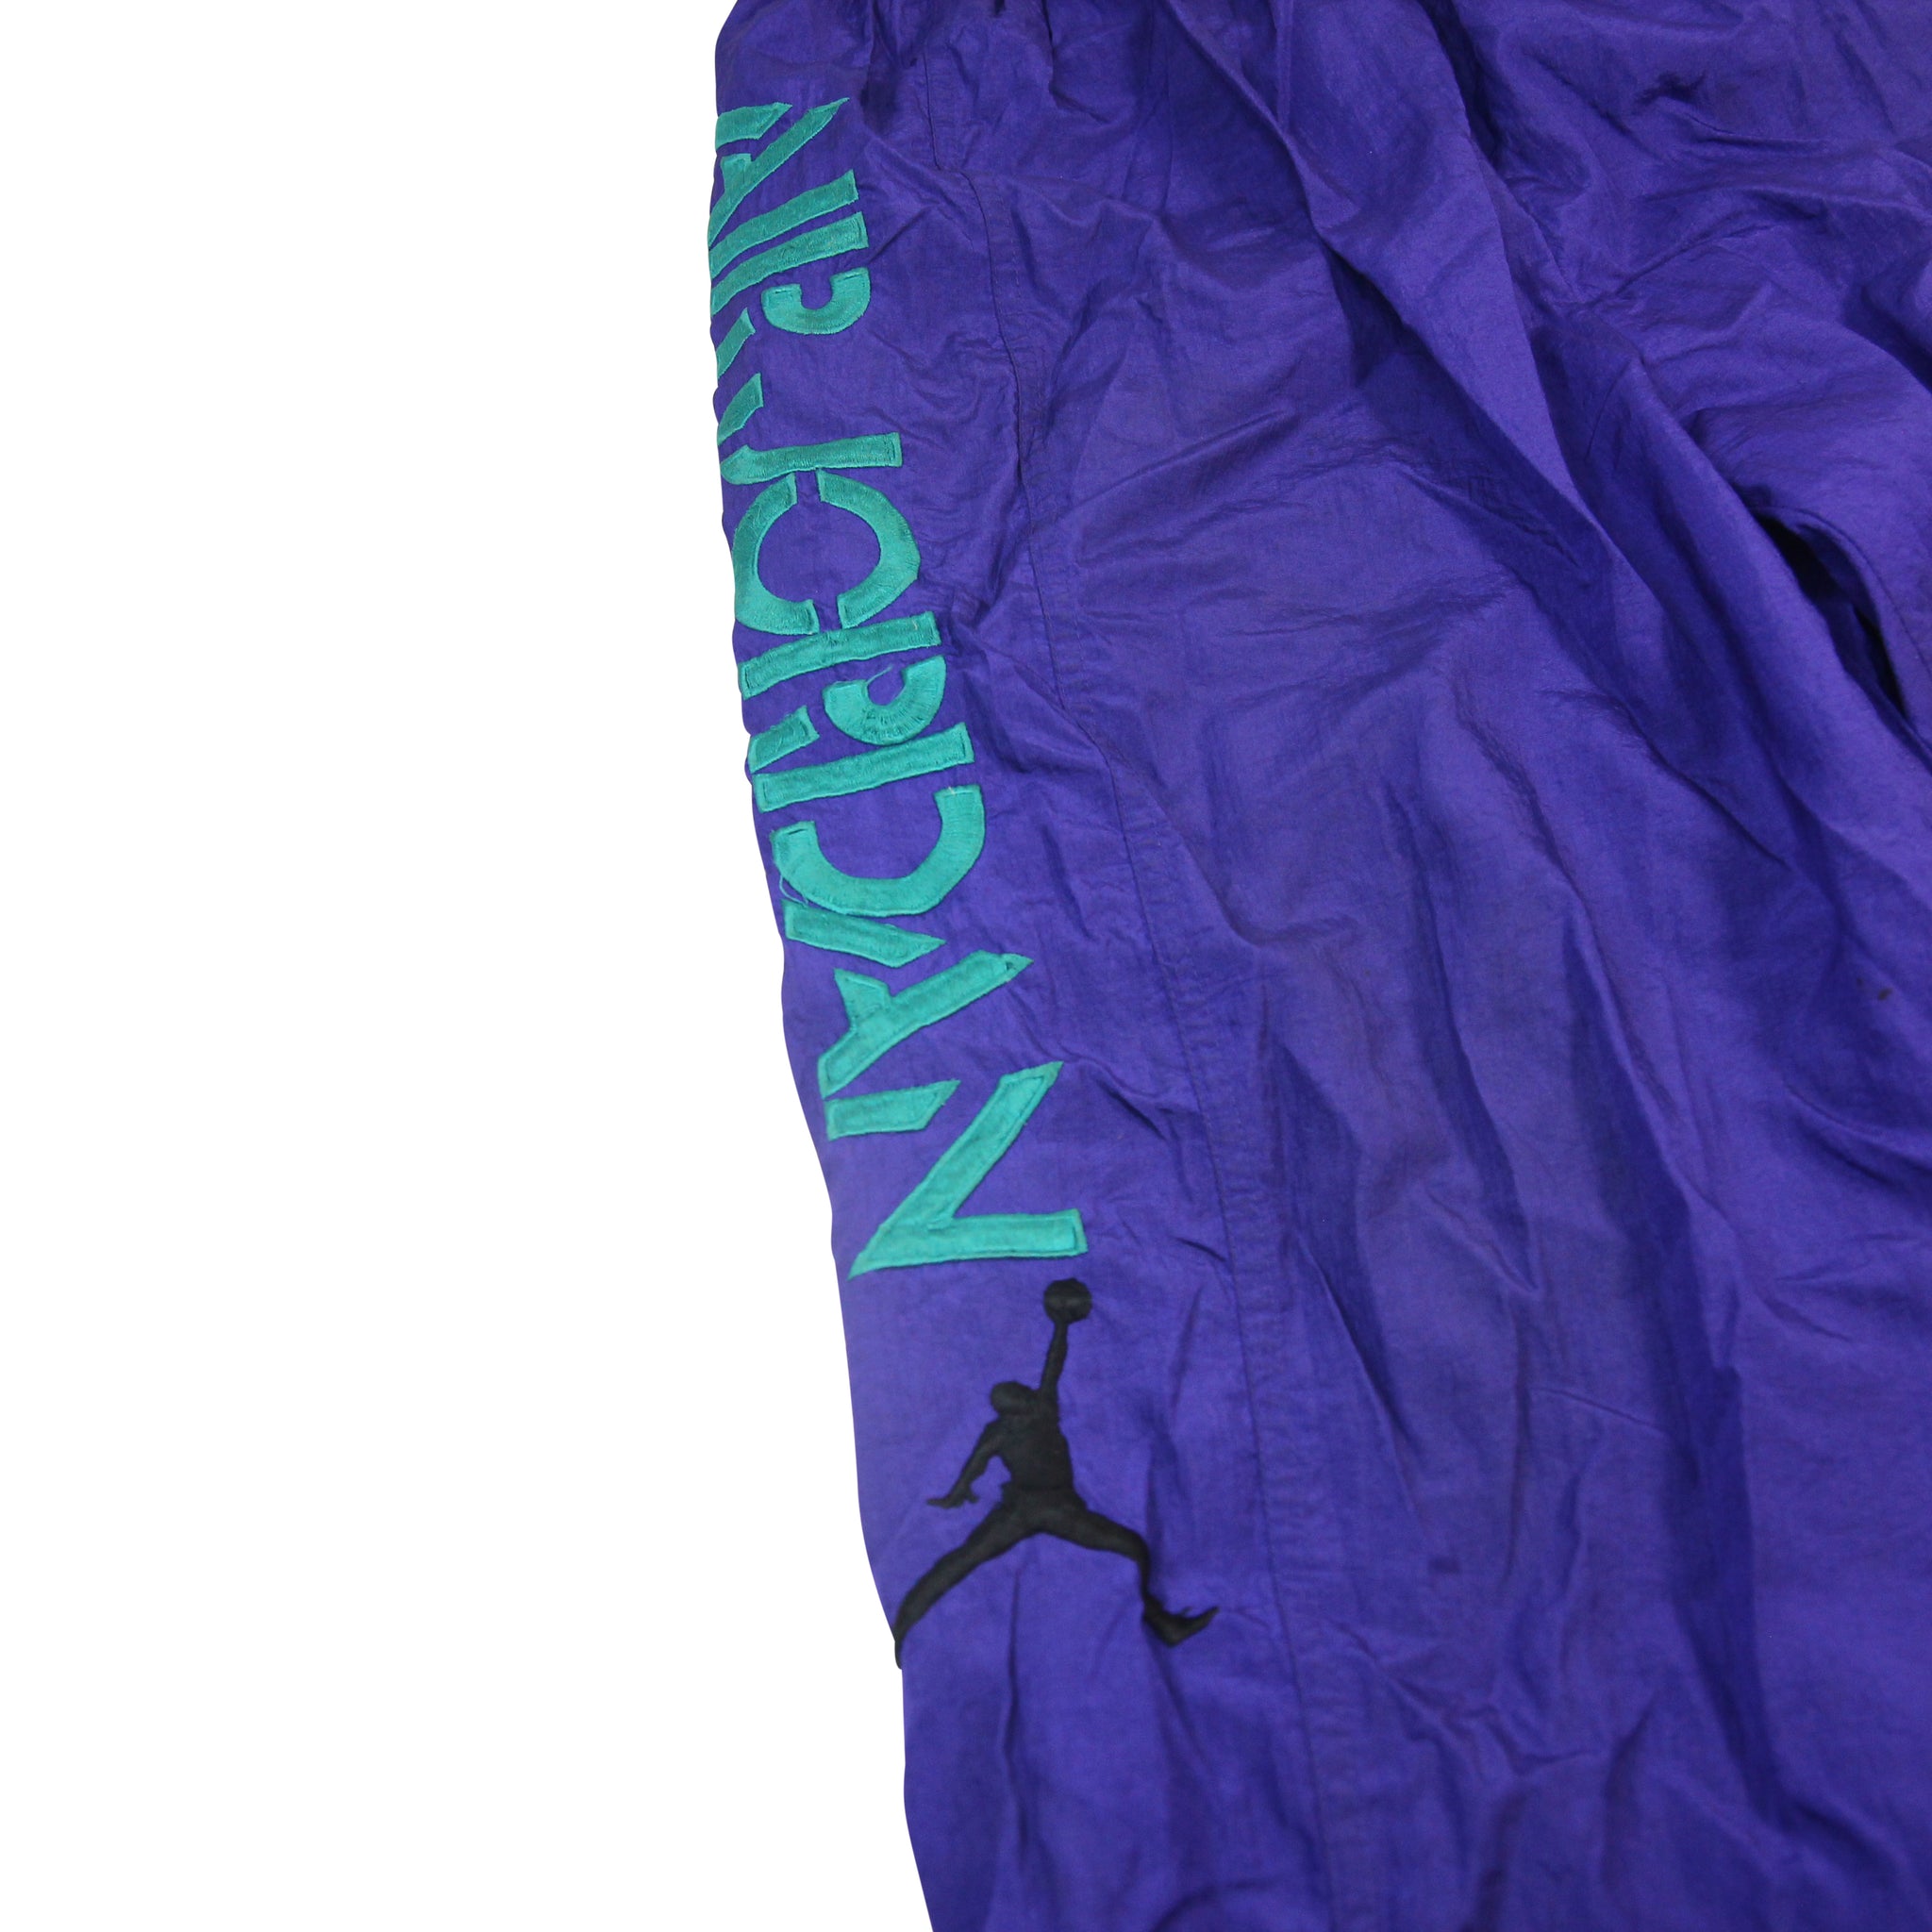 Vintage Nike Air Jordan Spellout Tear Away Athletic Pants - M – Jak of all  Vintage